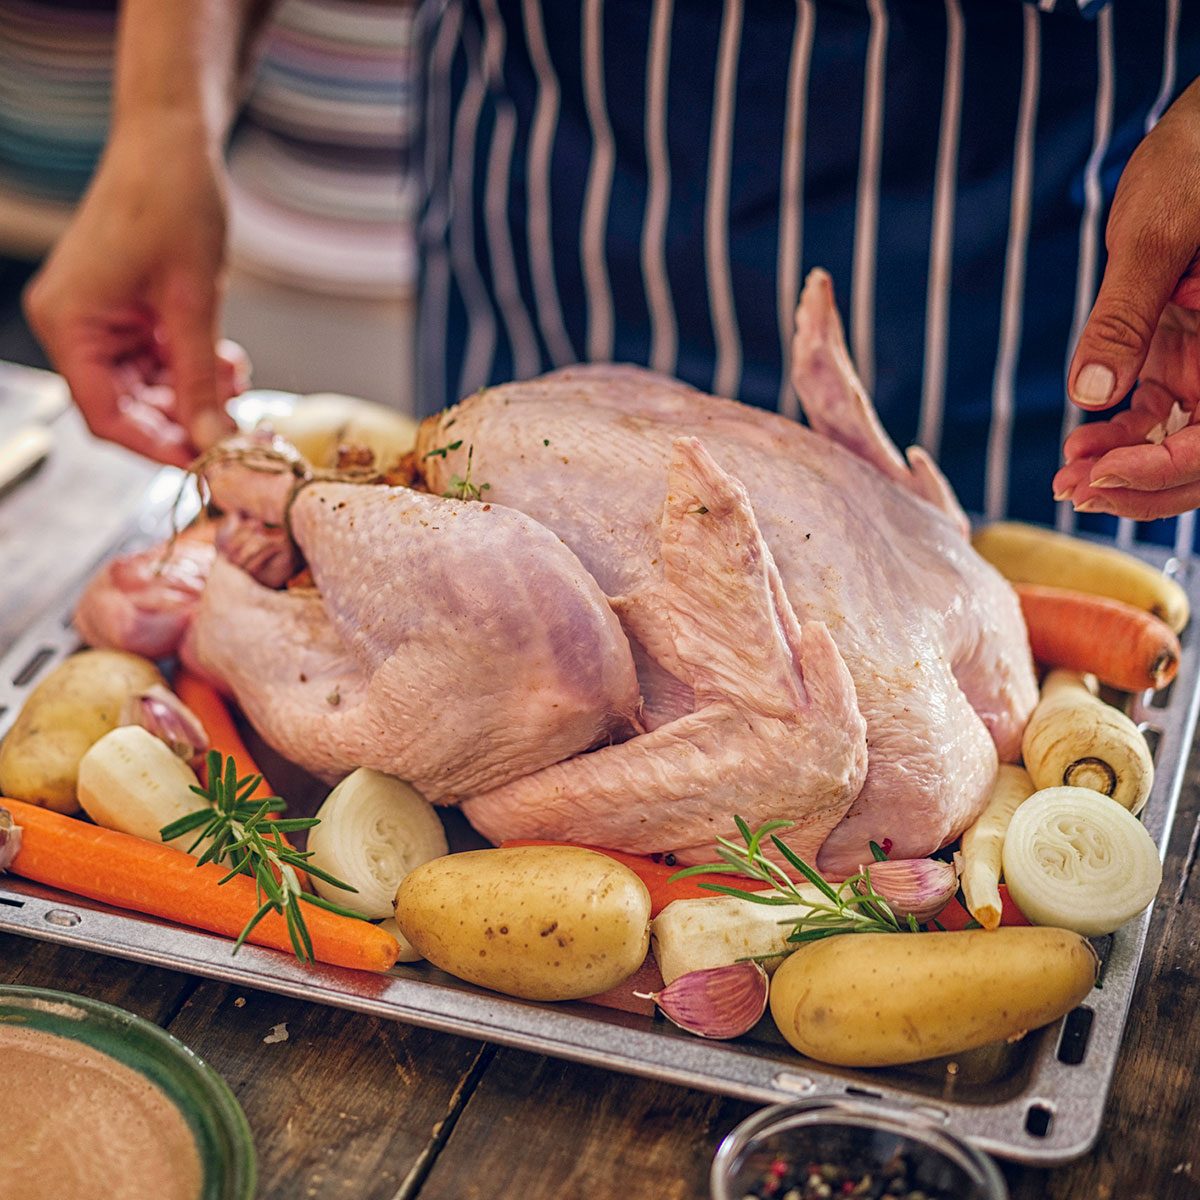 Preparing Turkey for feast